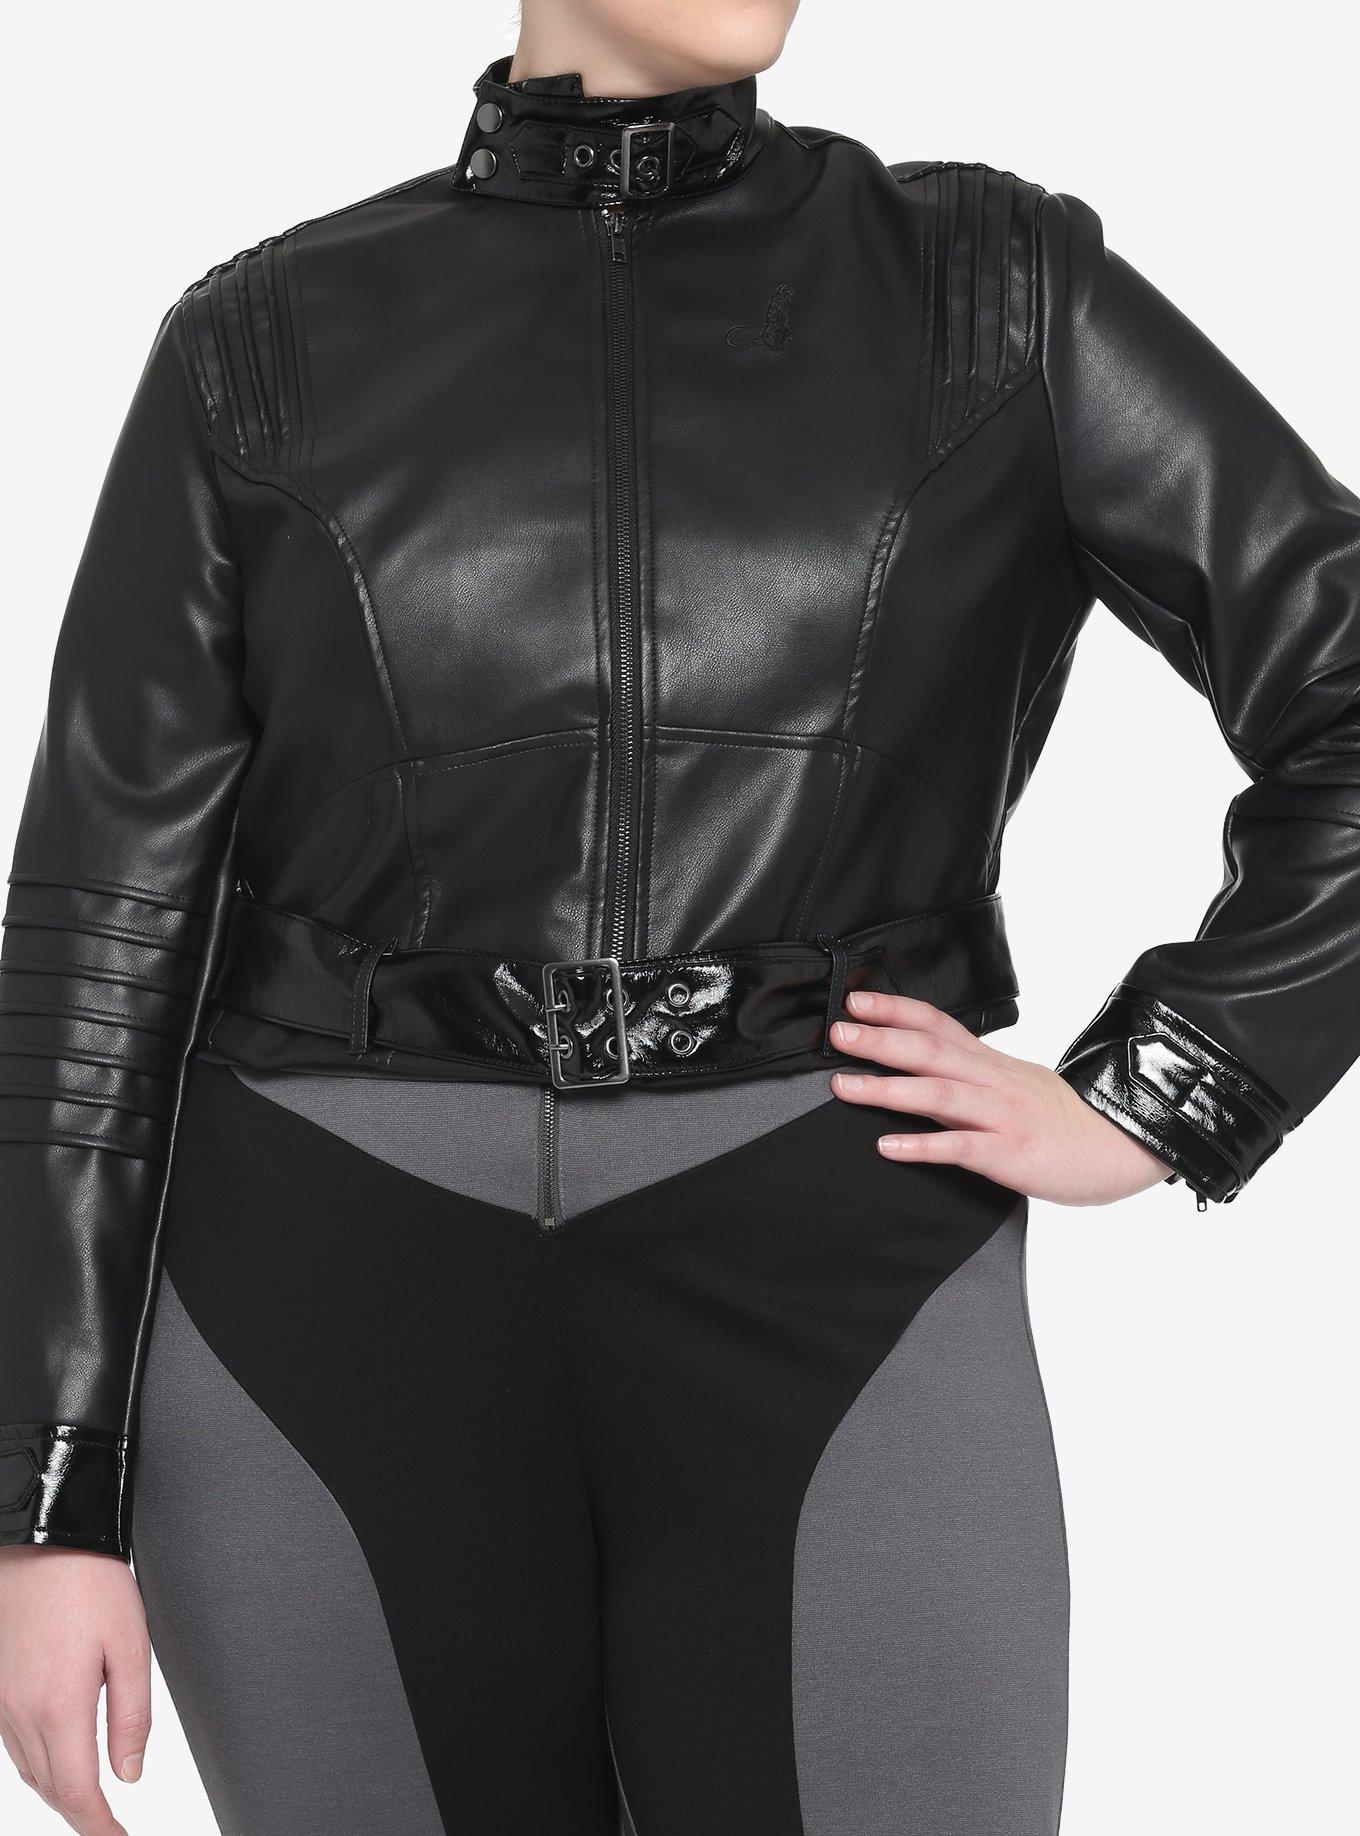 DC Comics The Batman Catwoman Faux Leather Jacket Plus Size, MULTI, hi-res